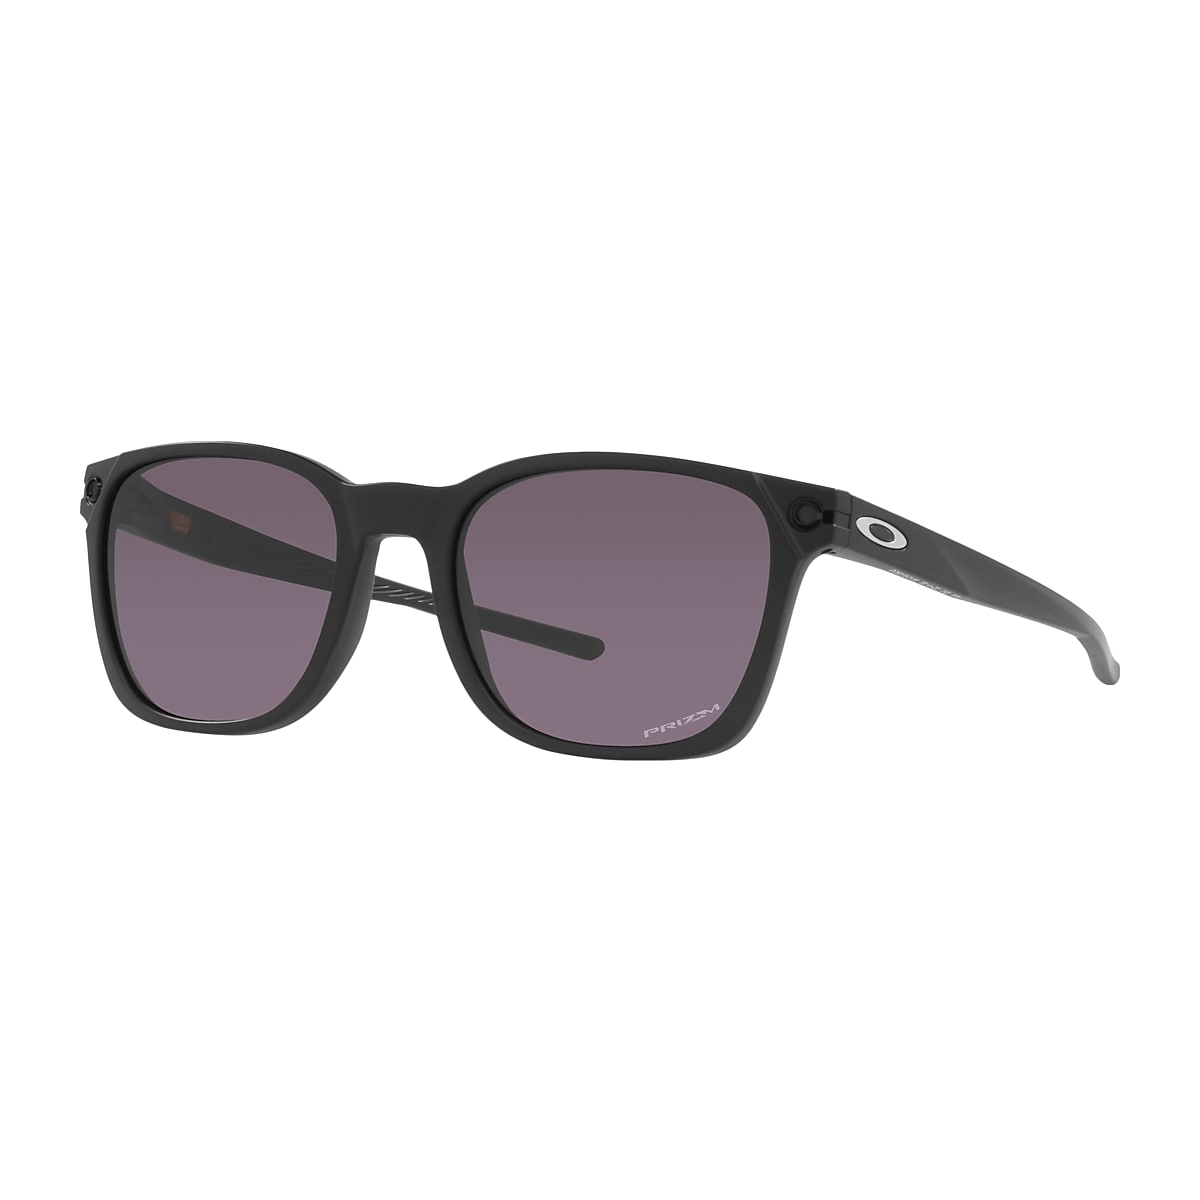 restjes Ingrijpen Panda Ojector Prizm Grey Lenses, Matte Black Frame Sunglasses | Oakley® US